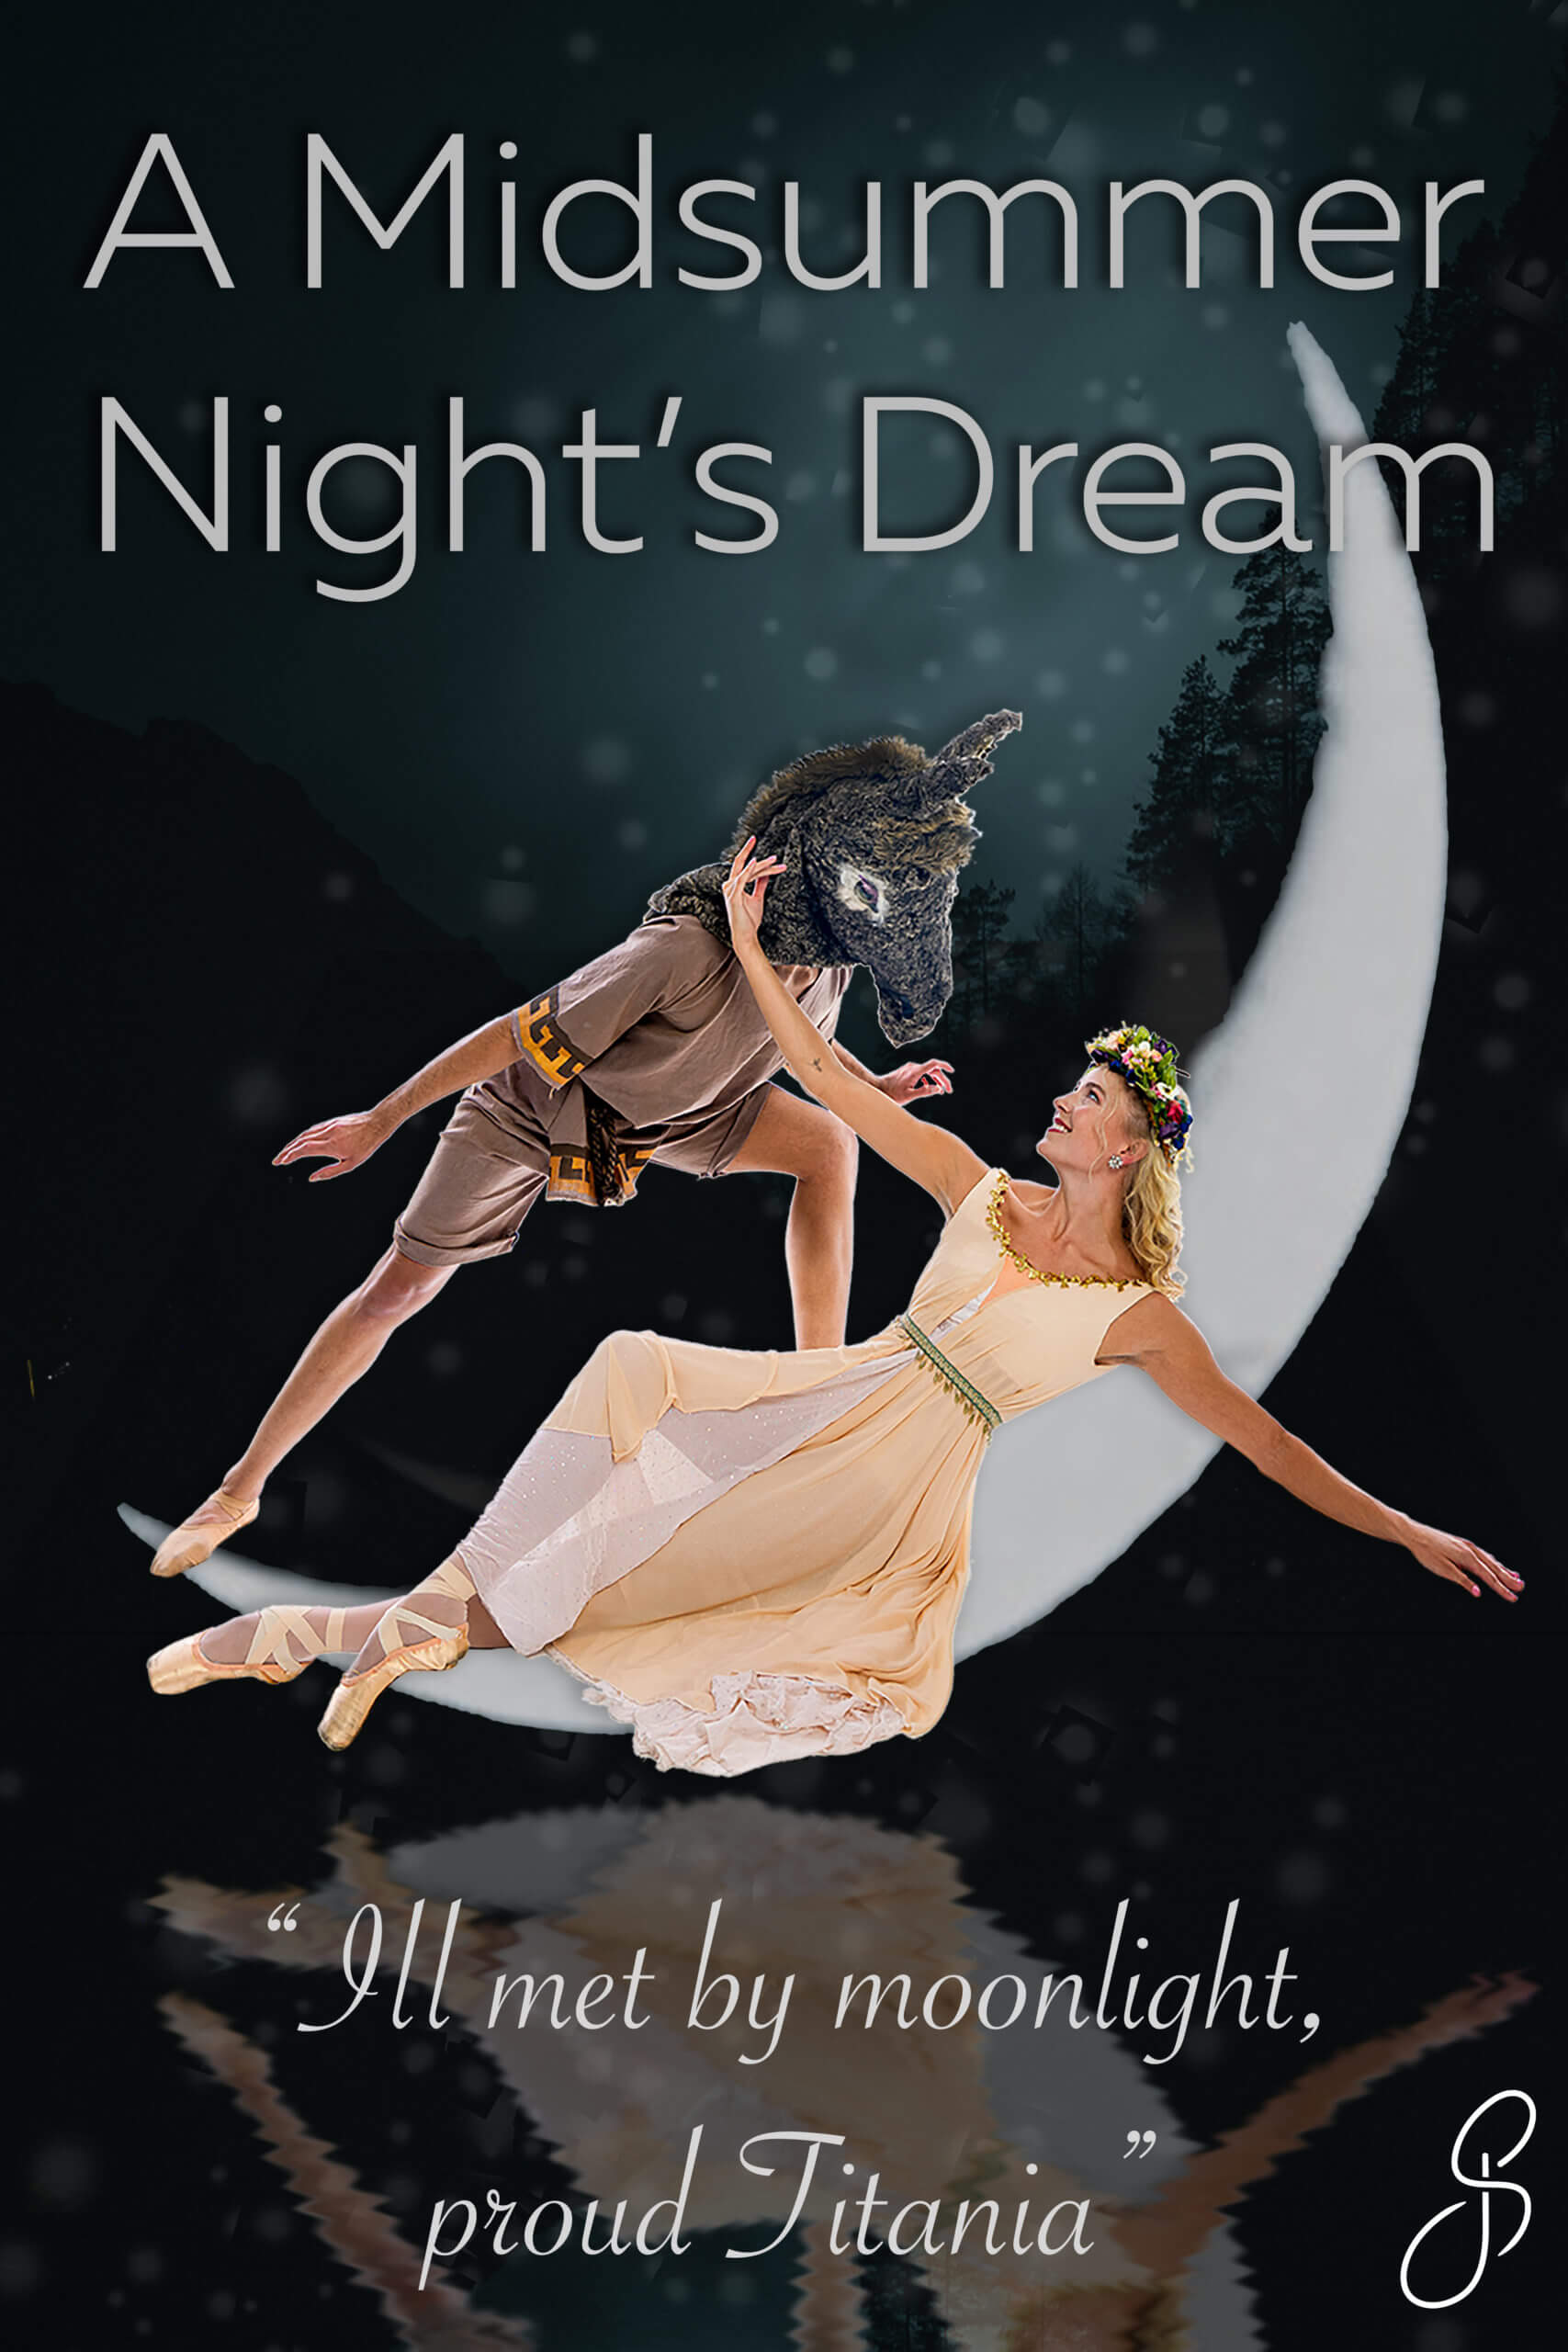 Midsummer Night's Dream poster